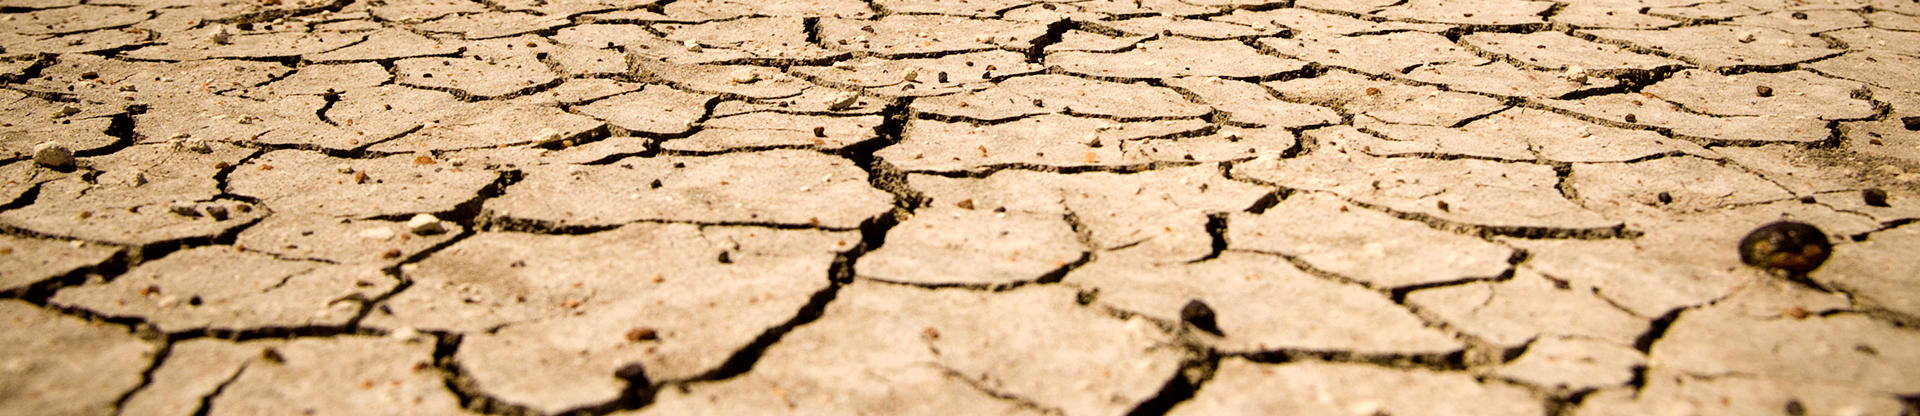 Vláda se suchem nebojuje, tvrdí Nejvyšší kontrolní úřad. Opatření prý zůstávají jen na papíře